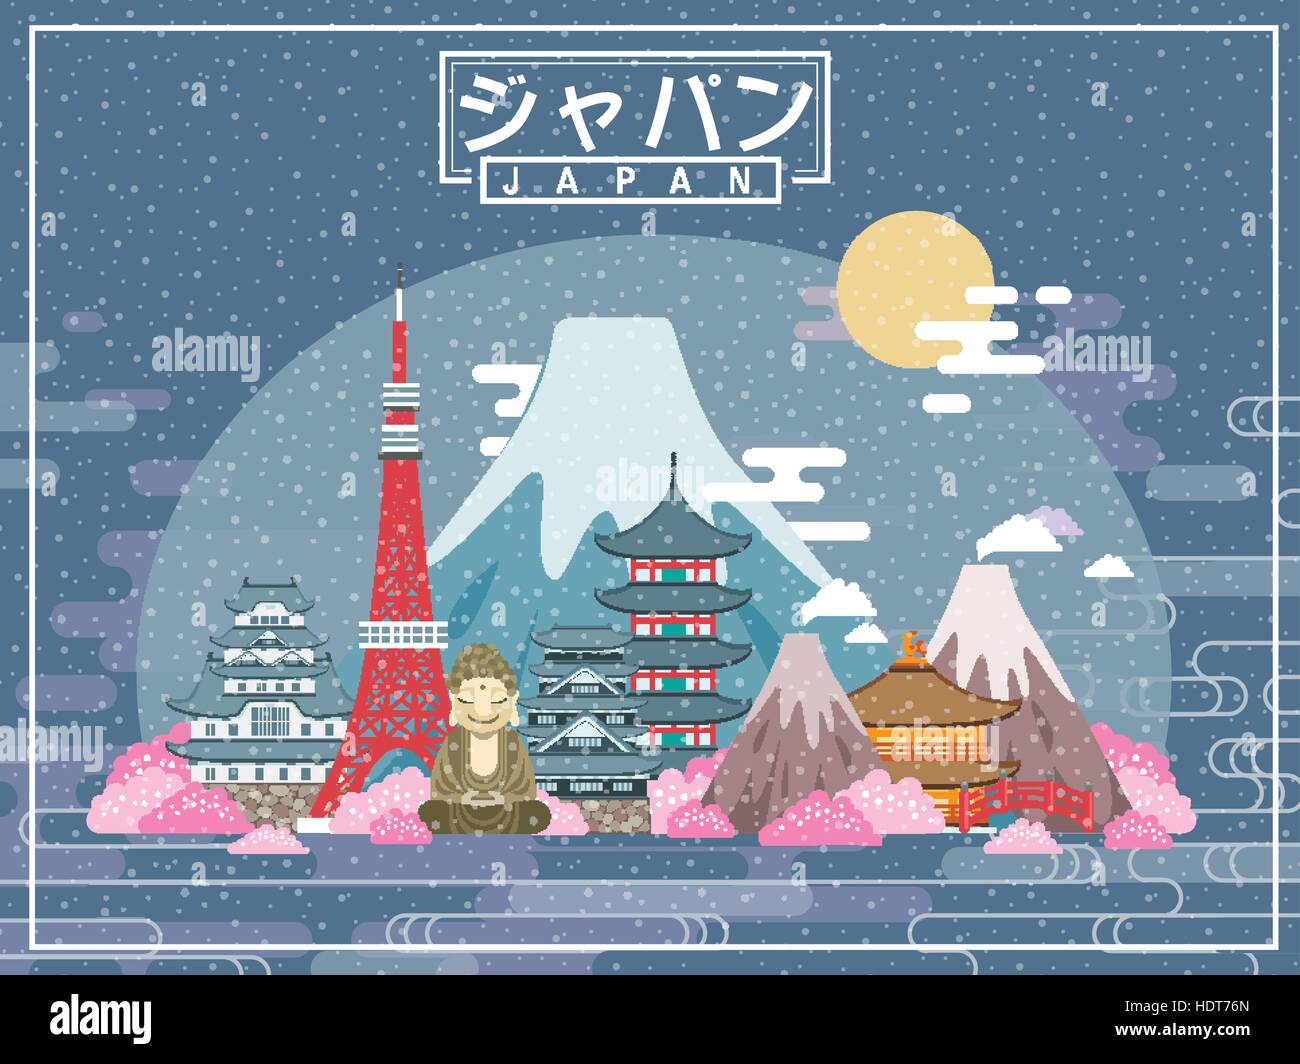 schöne Japan reisen Poster - Japan in japanischen Wörtern in der Mitte Stock Vektor